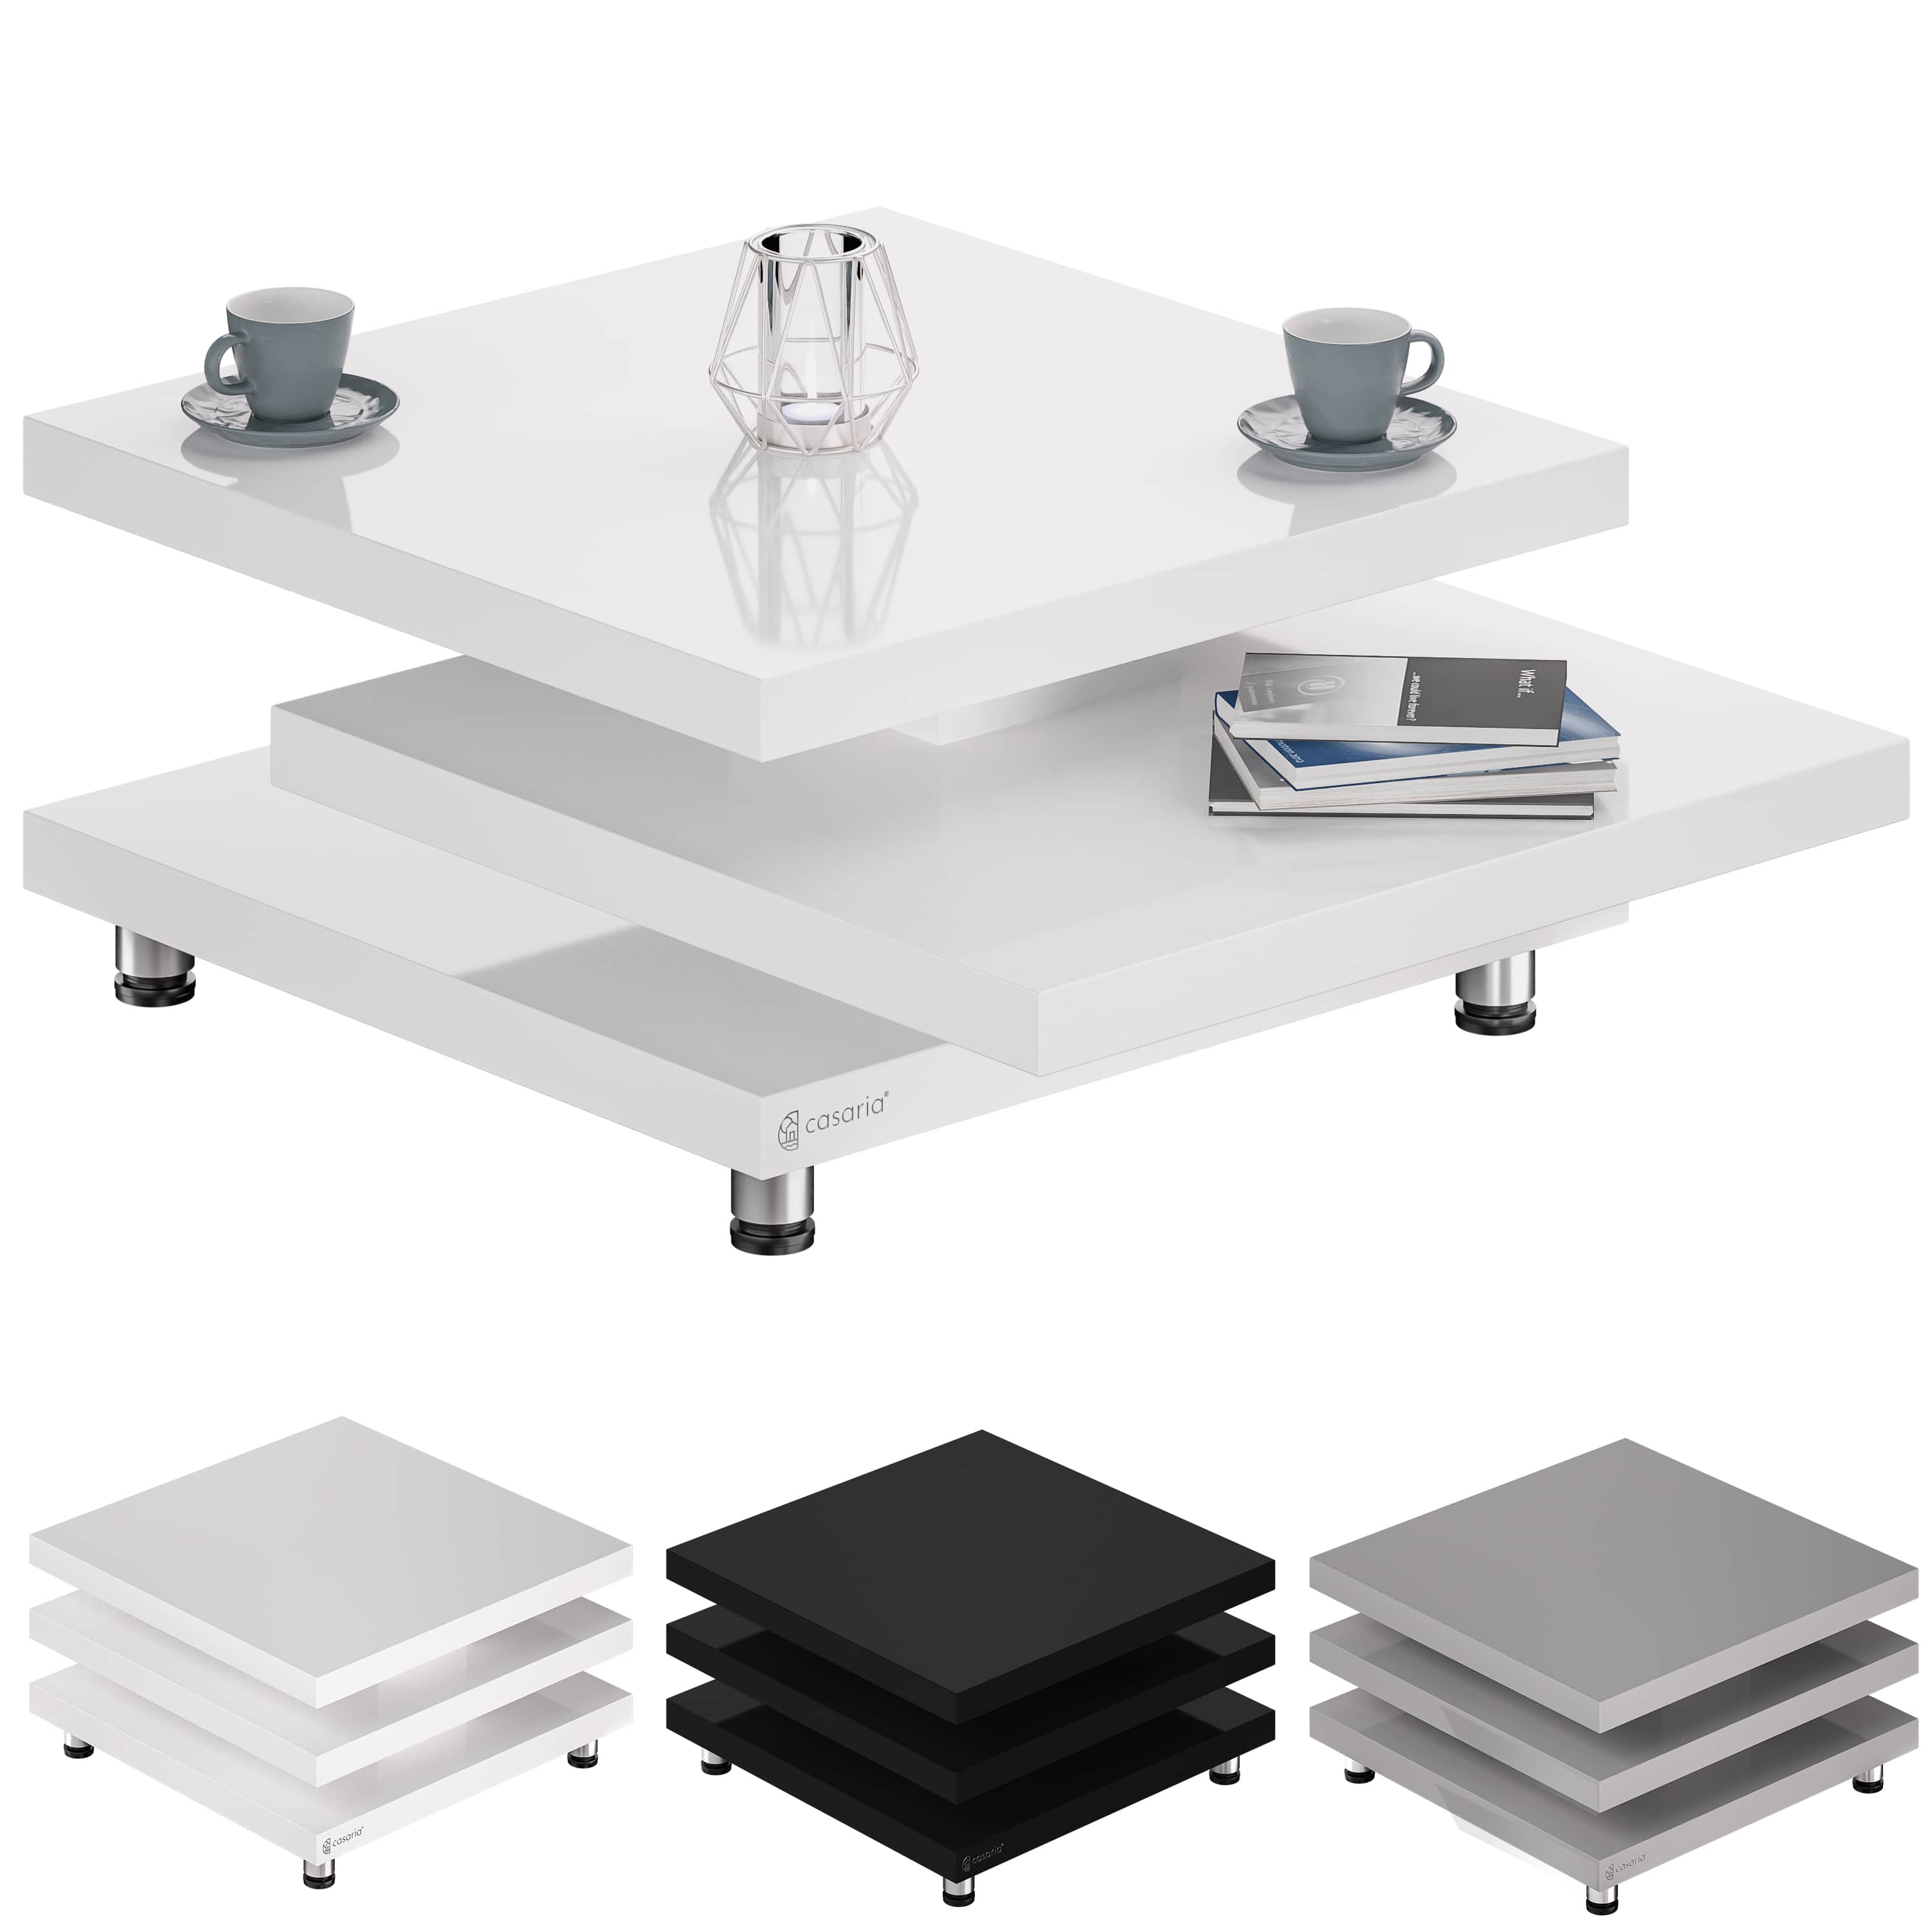 Casaria - Couchtisch New York 72x72cm Wohnzimmertisch Hochglanz Design Modern 360° drehbare Tischplatte höhenverstellbare Füße mdf Sofatisch Cube